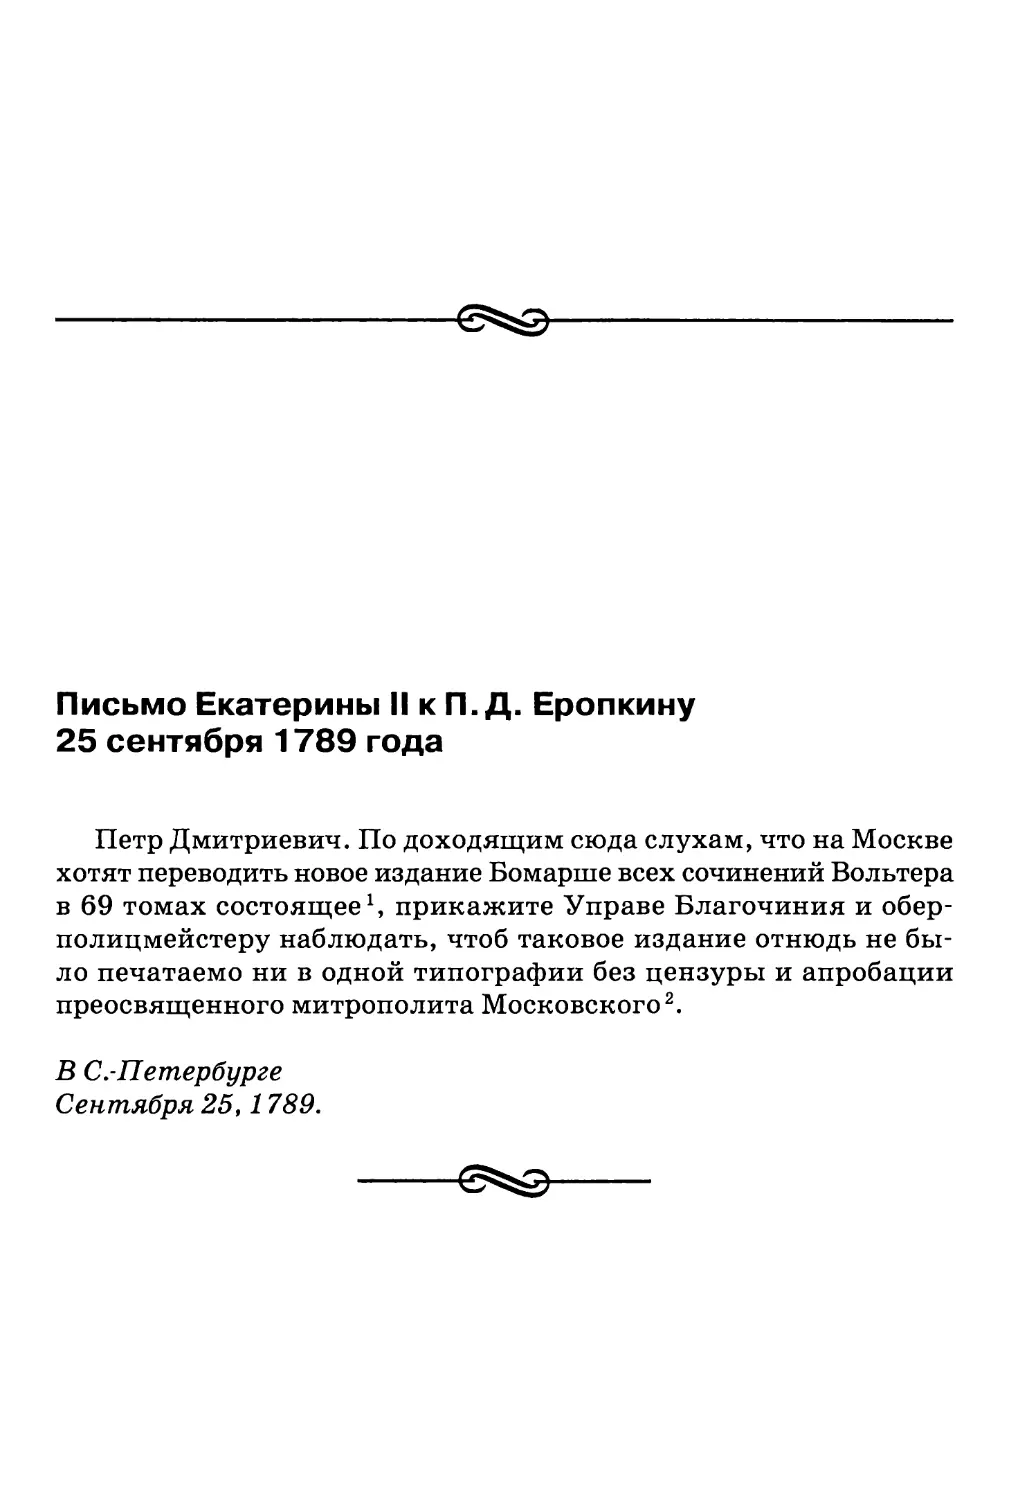 Письмо Екатерины II к П.Д. Еропкину 25 сентября 1789 года